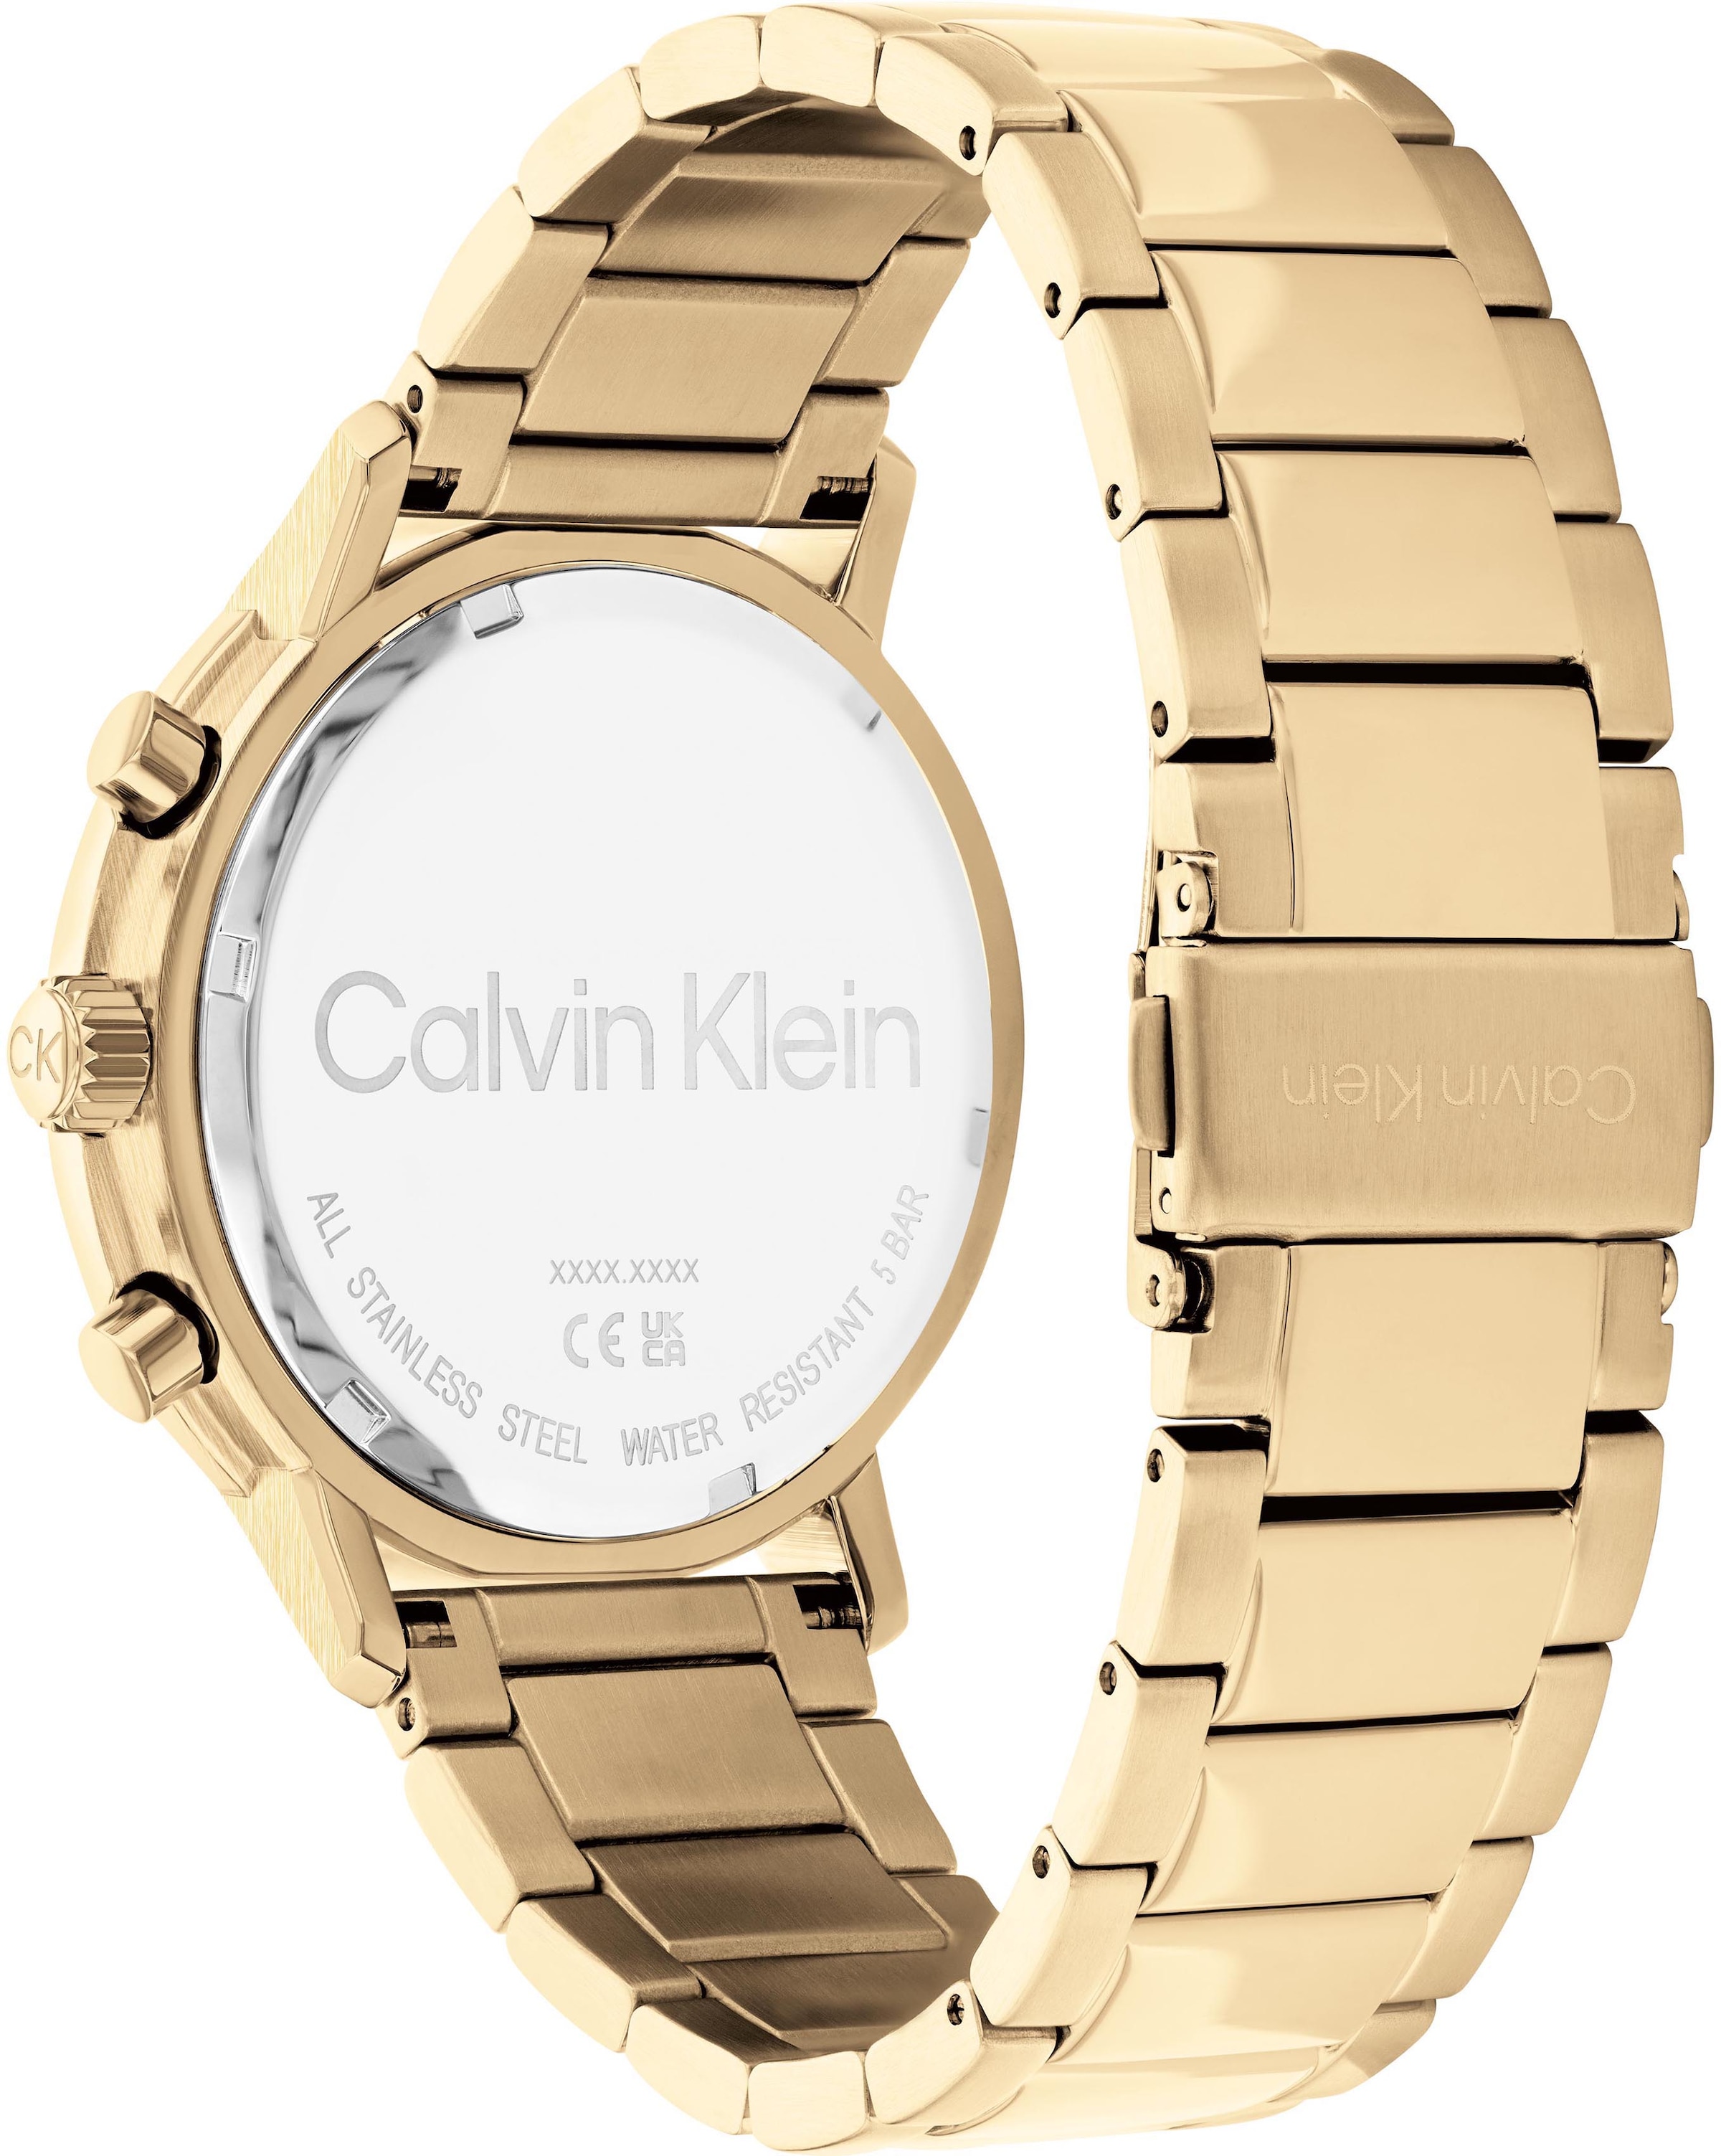 Calvin Klein Multifunktionsuhr »Gauge, 25200065« online kaufen